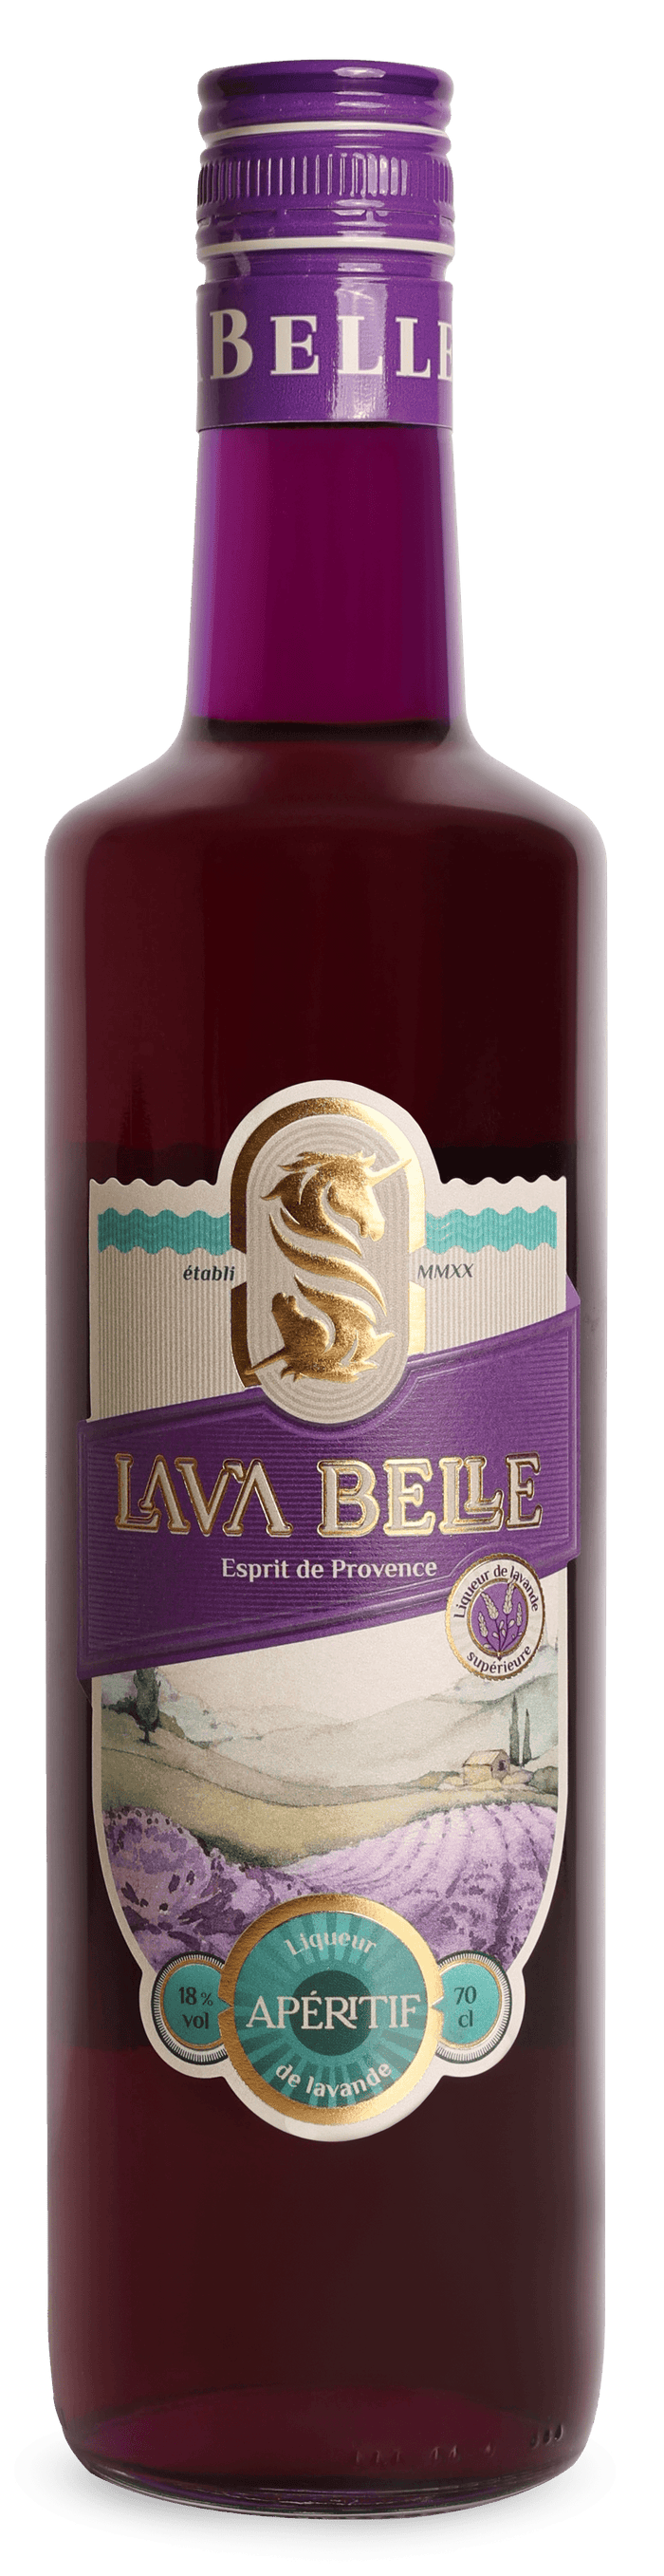 LAV'A BELLE - Lavendel Apéritif